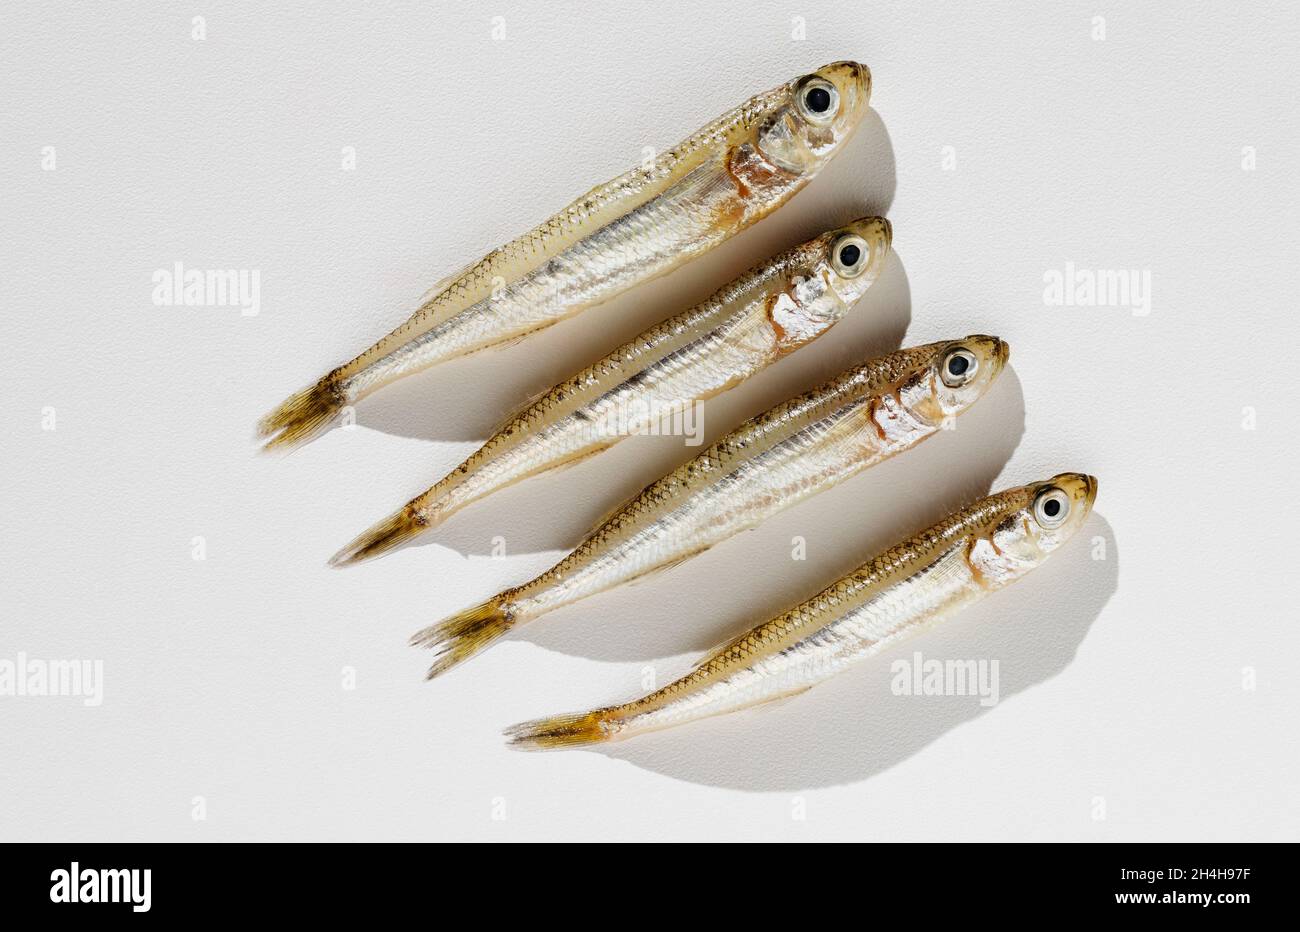 Fish big-scale sand smelt -atherina boyeri- on white background ,small and slender fish Stock Photo